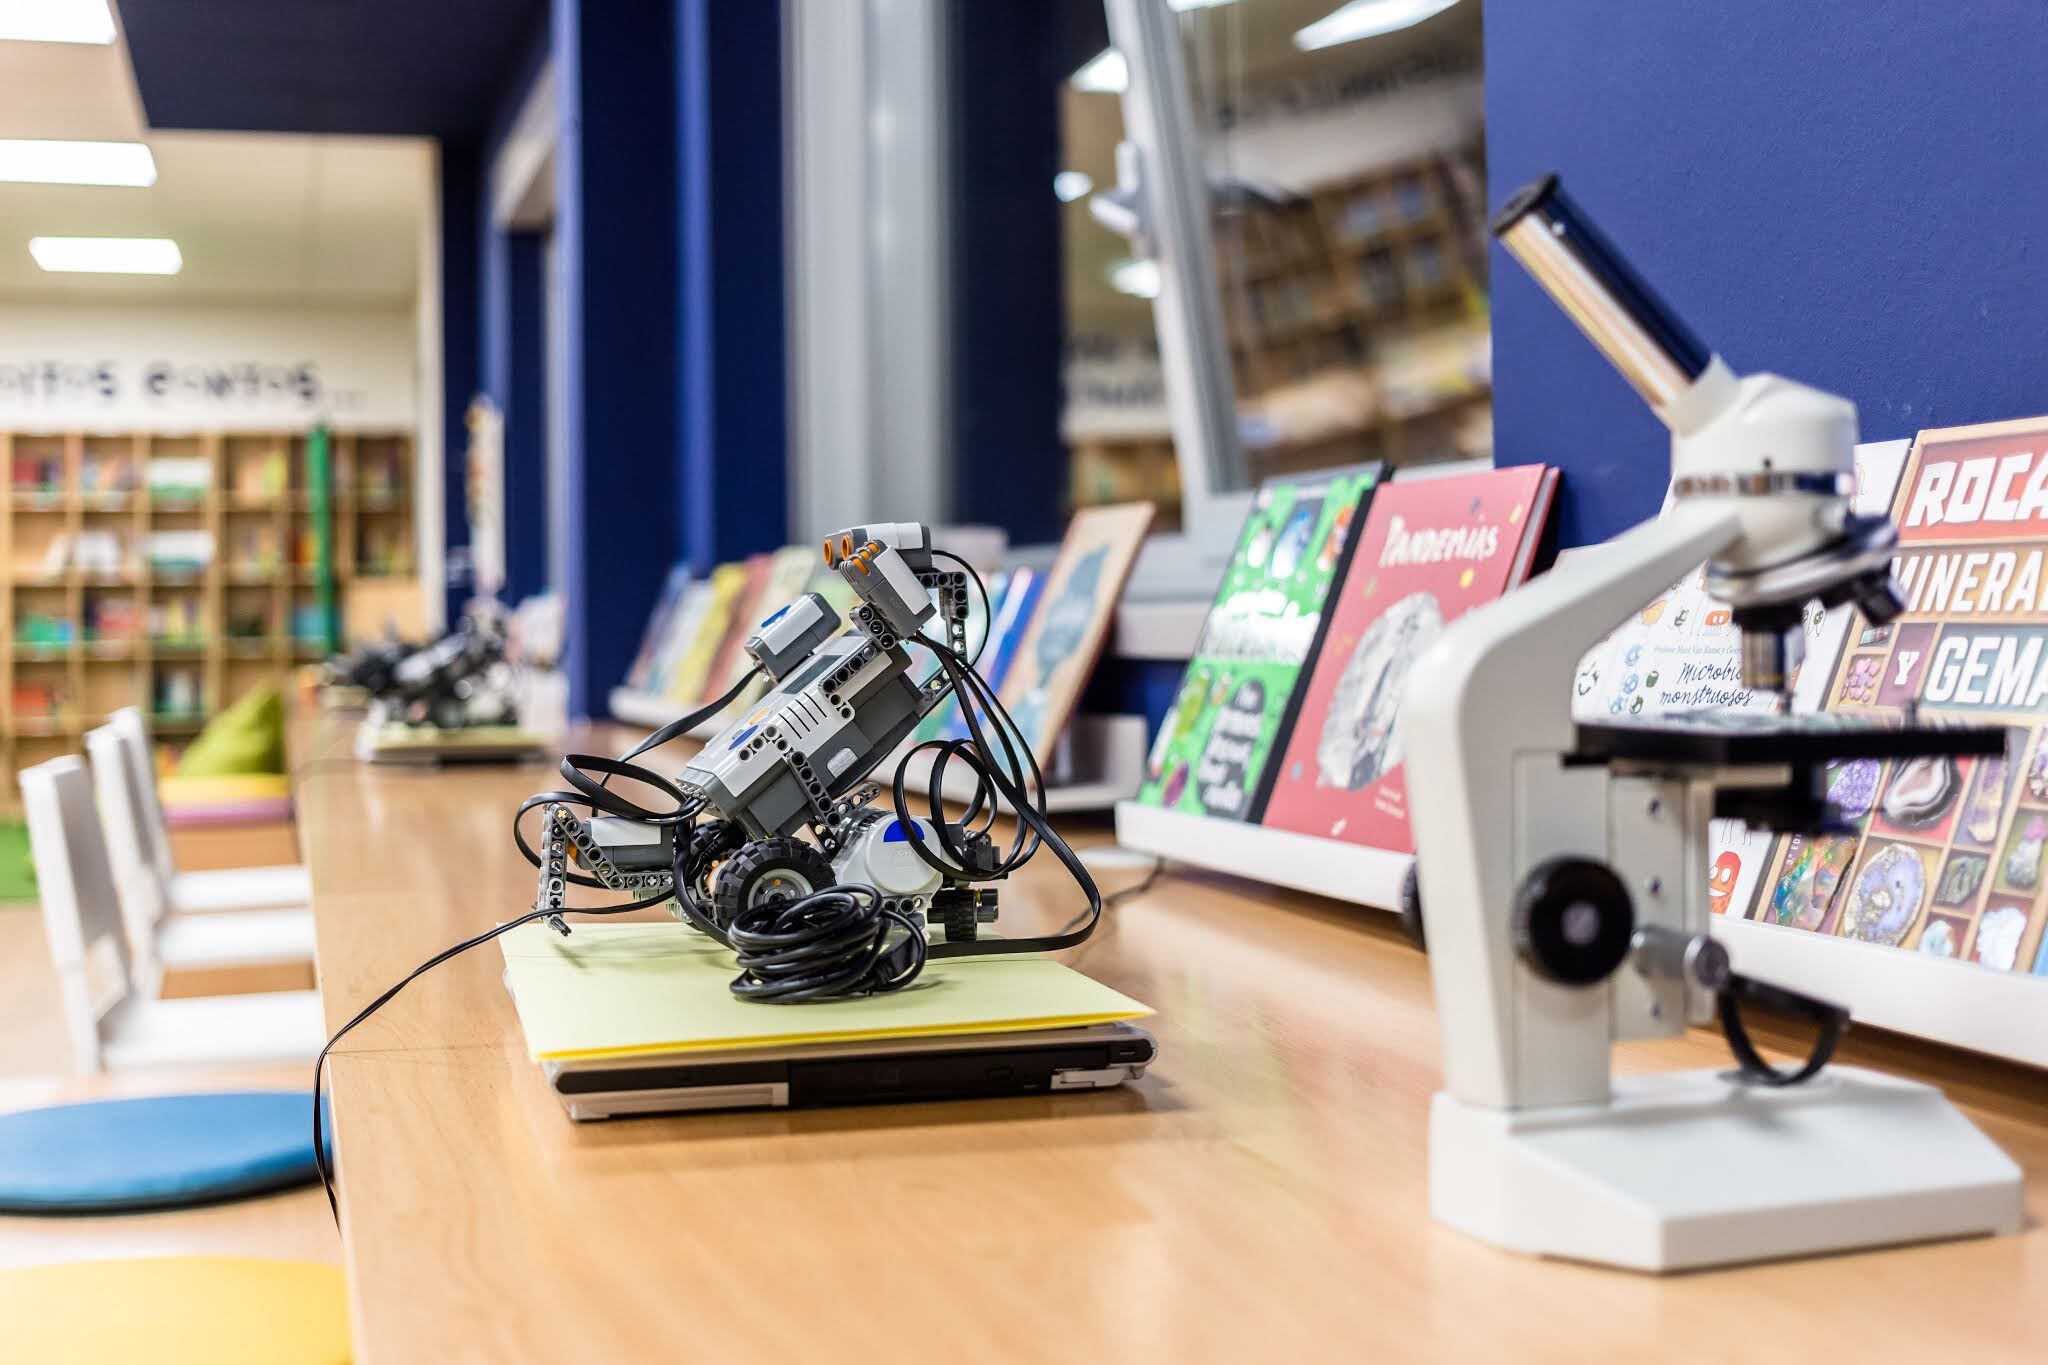 Un microscopio y un robot escolar en la biblioteca del colegio de Corvo.